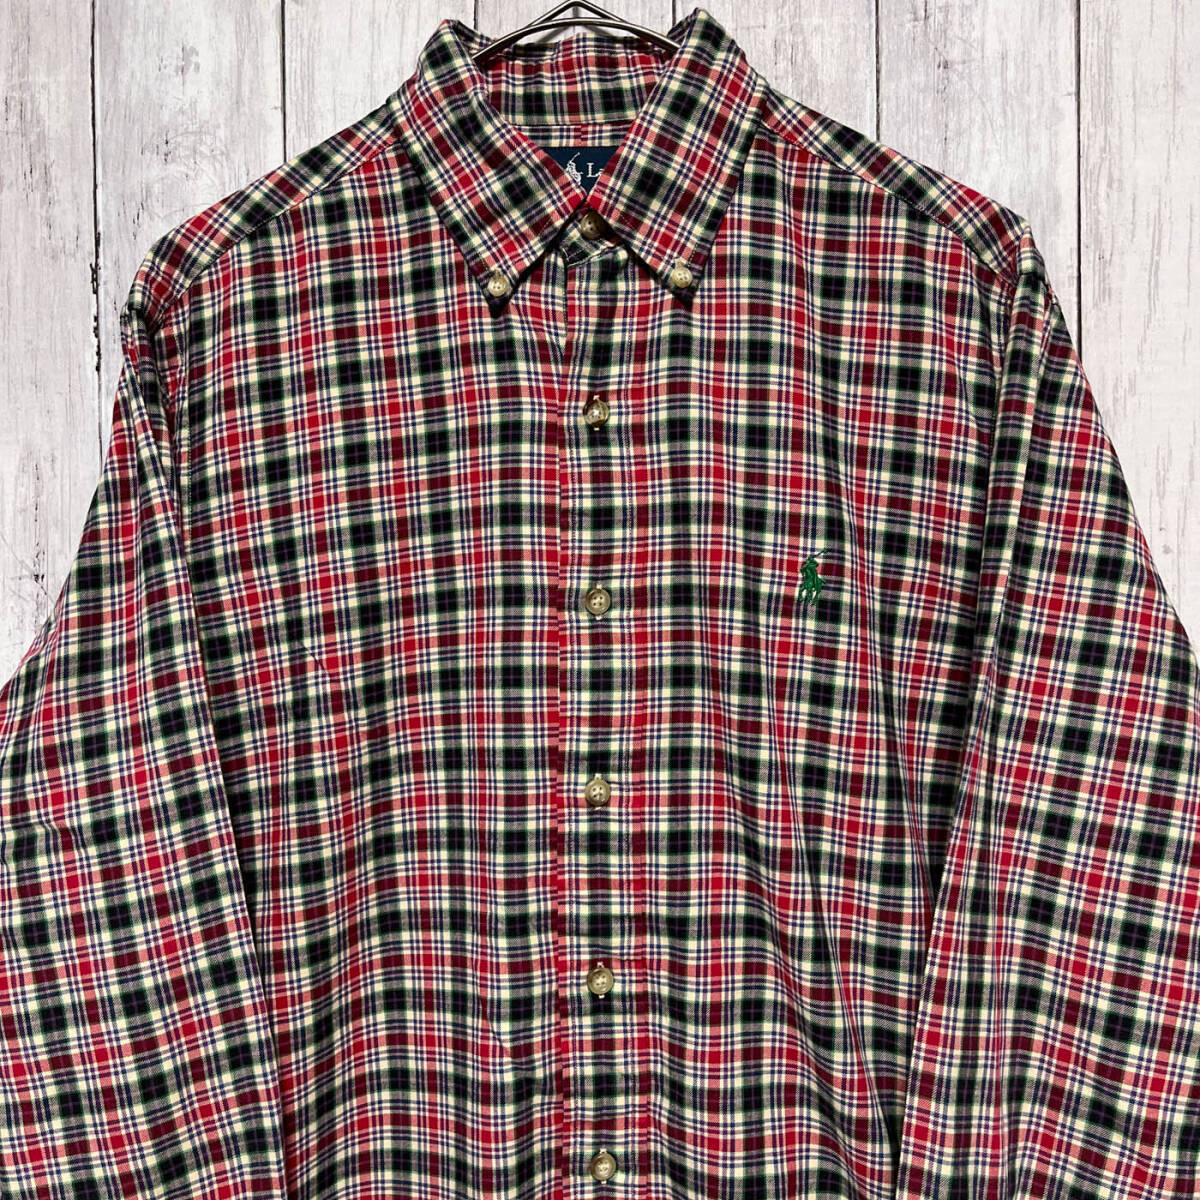 ラルフローレン Ralph Lauren CLASSIC FIT チェックシャツ 長袖シャツ メンズ ワンポイント コットン100% Sサイズ 5‐559